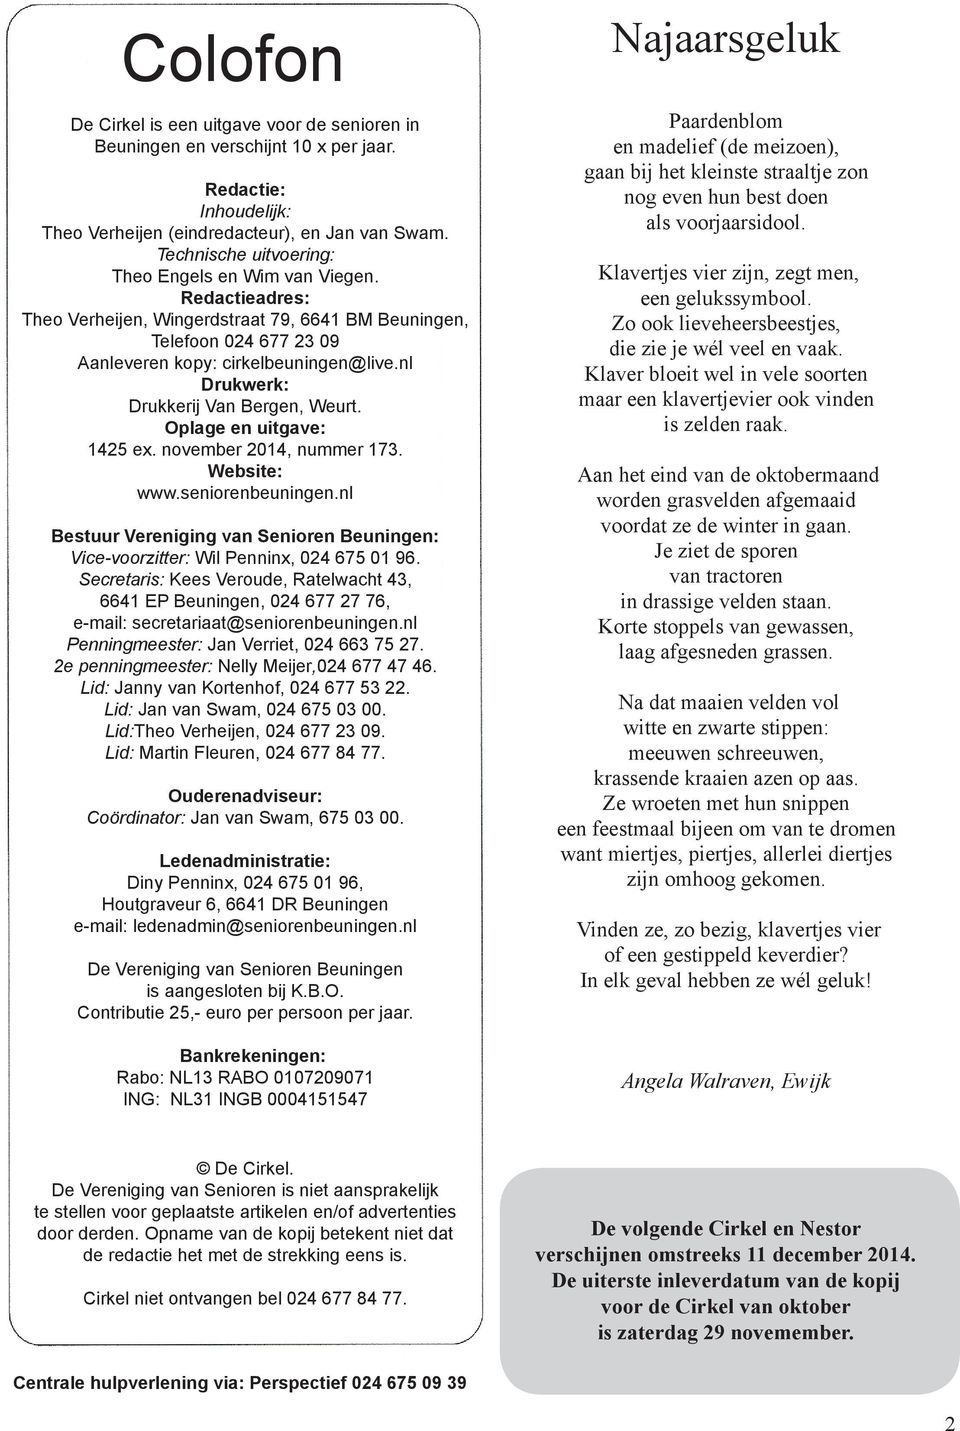 nl Drukwerk: Drukkerij Van Bergen, Weurt. Oplage en uitgave: 1425 ex. november 2014, nummer 173. Website: www.seniorenbeuningen.